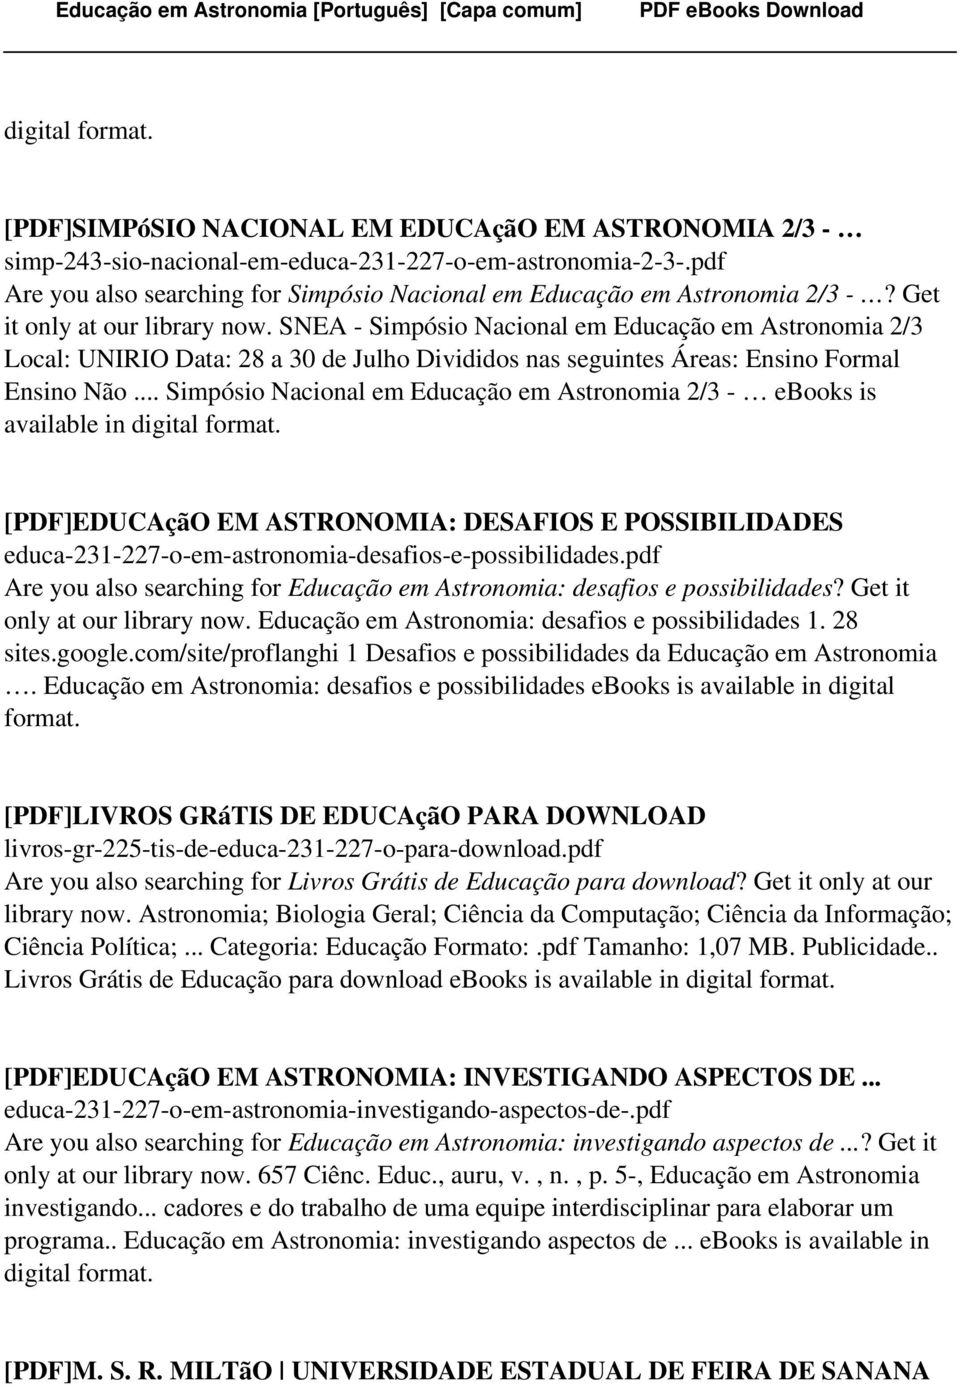 .. Simpósio Nacional em Educação em Astronomia 2/3 - ebooks is [PDF]EDUCAçãO EM ASTRONOMIA: DESAFIOS E POSSIBILIDADES educa-231-227-o-em-astronomia-desafios-e-possibilidades.